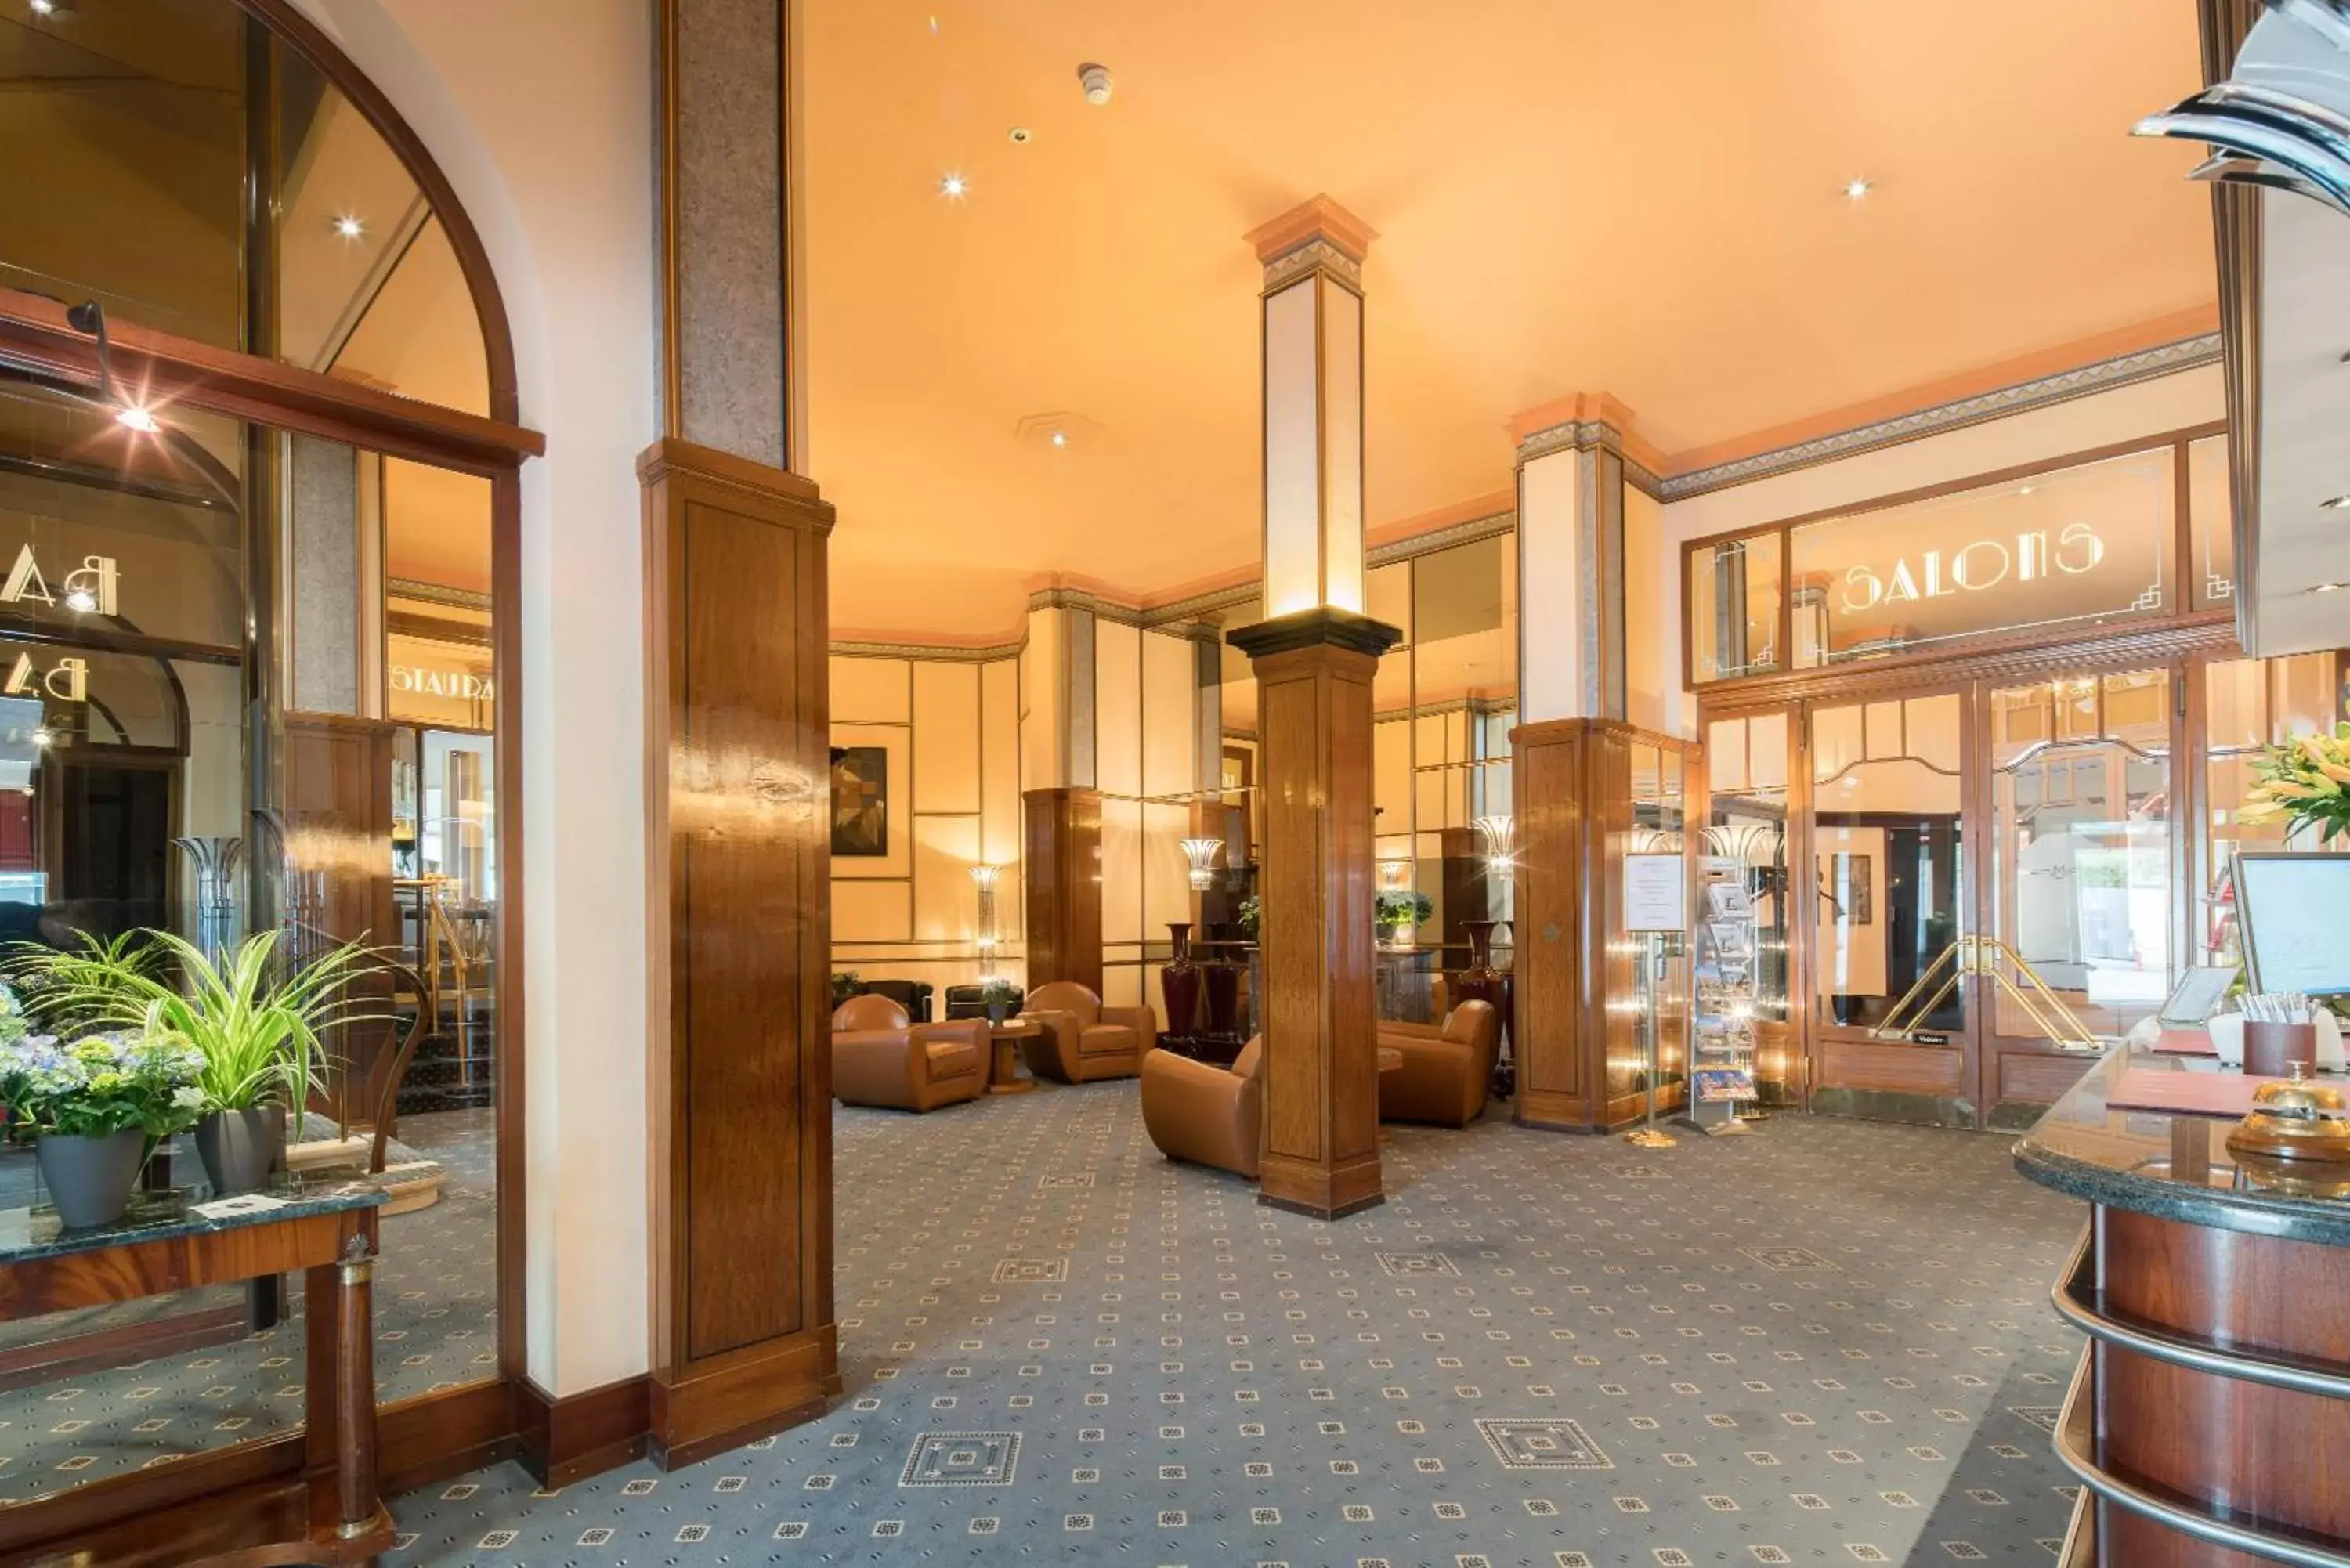 Lobby or reception, Lobby/Reception in Best Western Plus Hotel Mirabeau